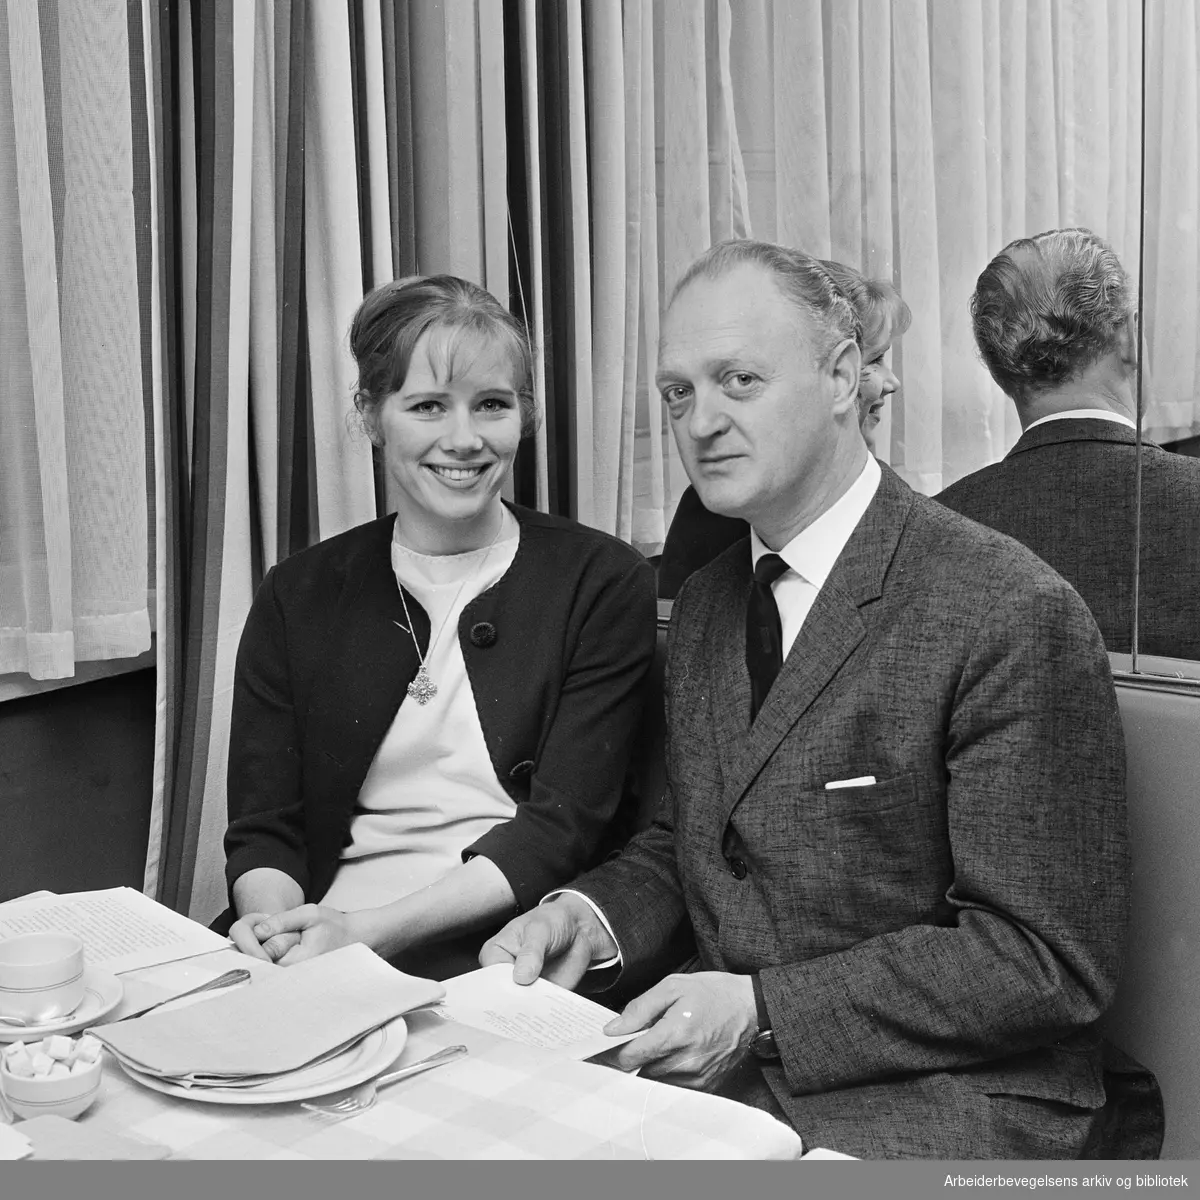 Liv Ullmann og produsent Åke Ahlin fra Sandrew Film & Teater er i Oslo (Hotel Continental) for å promotere spillefilmen "Pan". Februar 1962.